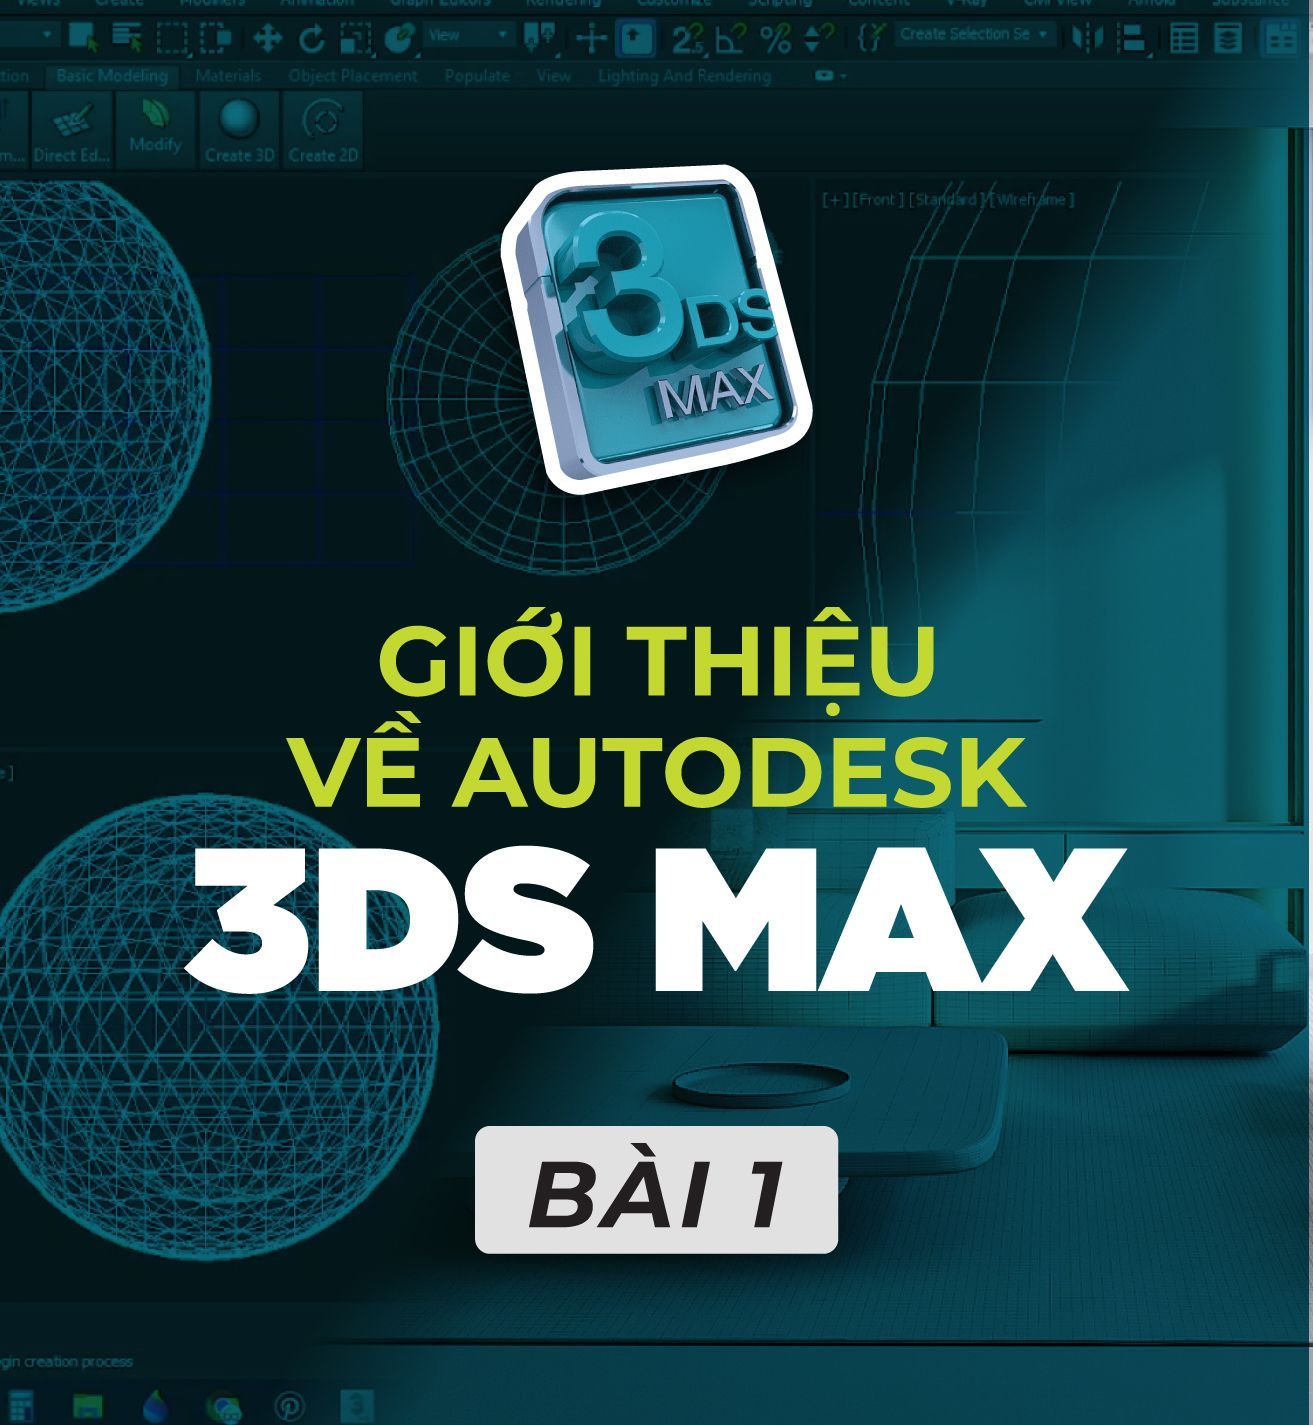 3Ds MAX - BÀI 1 - TỔNG QUAN VỀ PHẦN MỀM 3Ds MAX